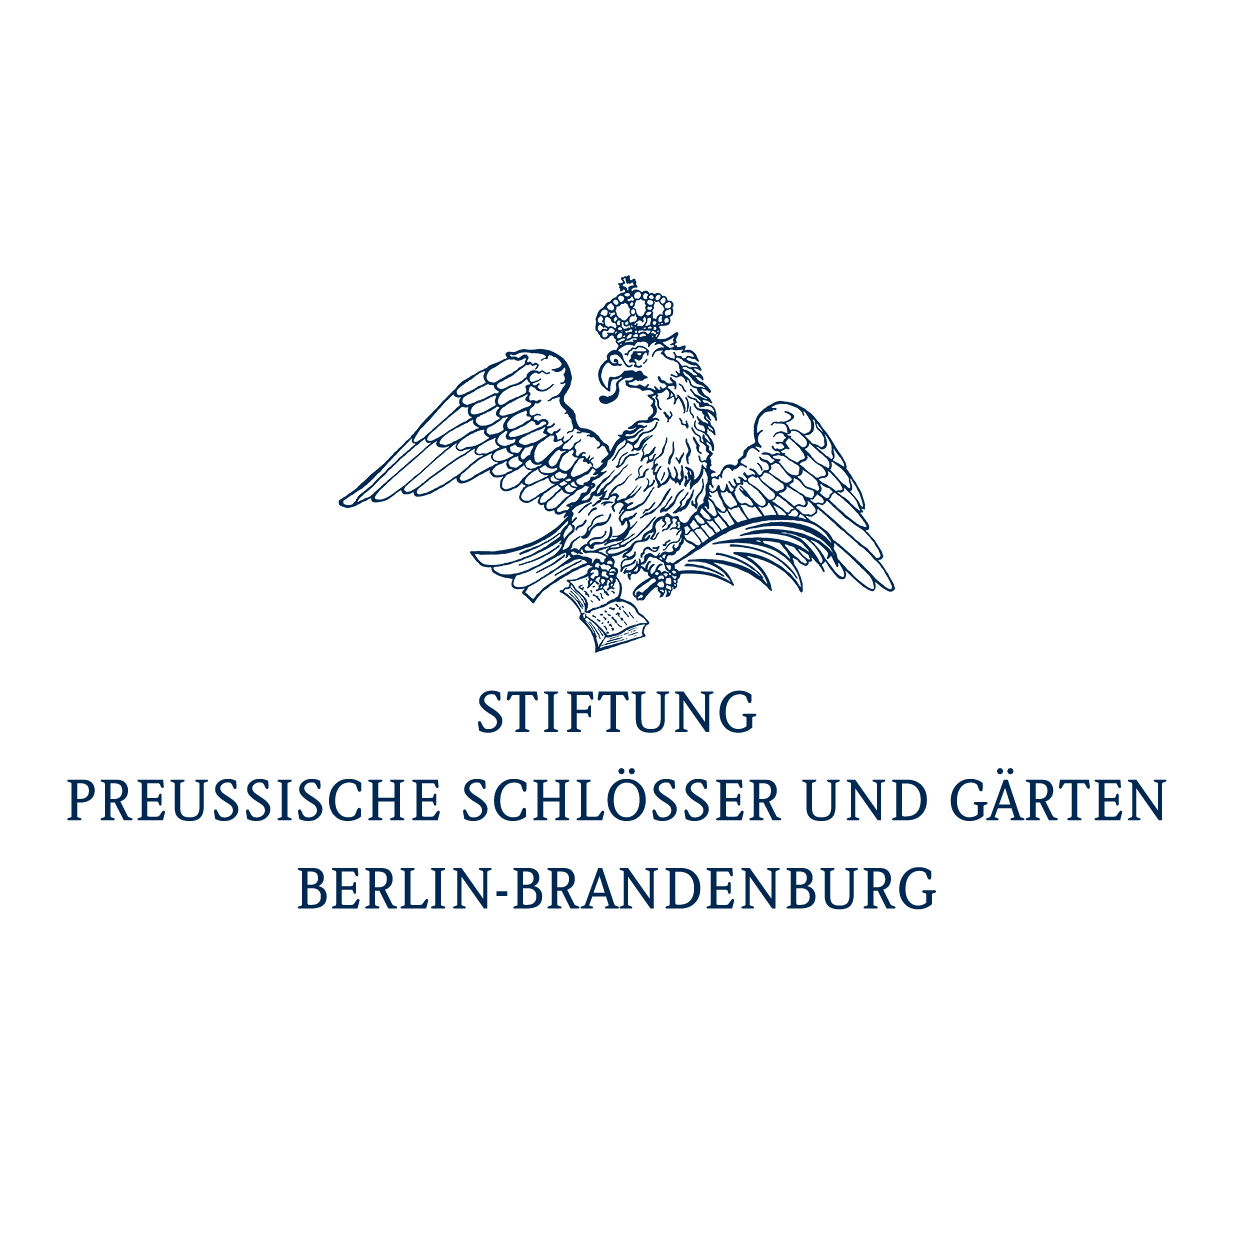 Stiftung Preussische Schlösser und Gärten Berlin-Brandenburg